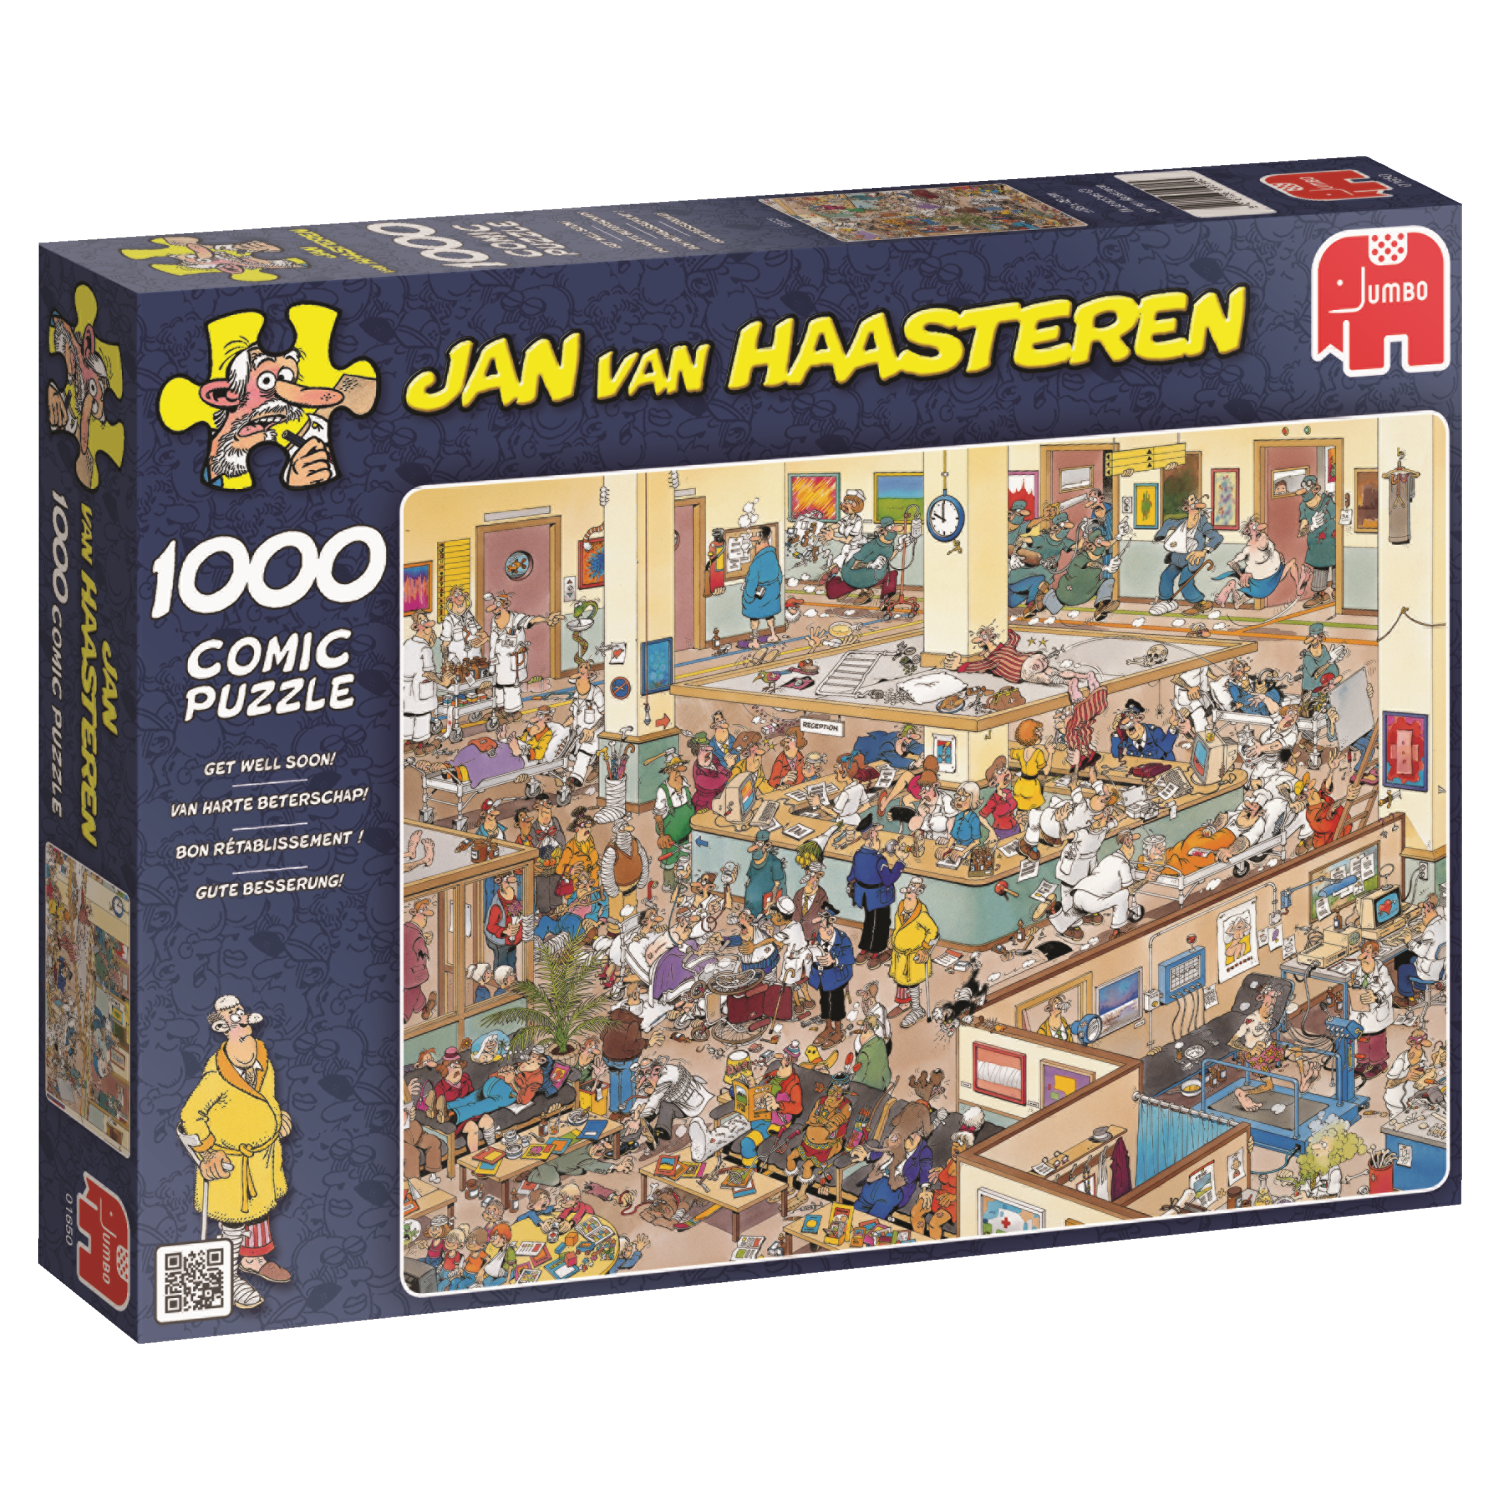 Jan van Haasteren Van Harte Beterschap!